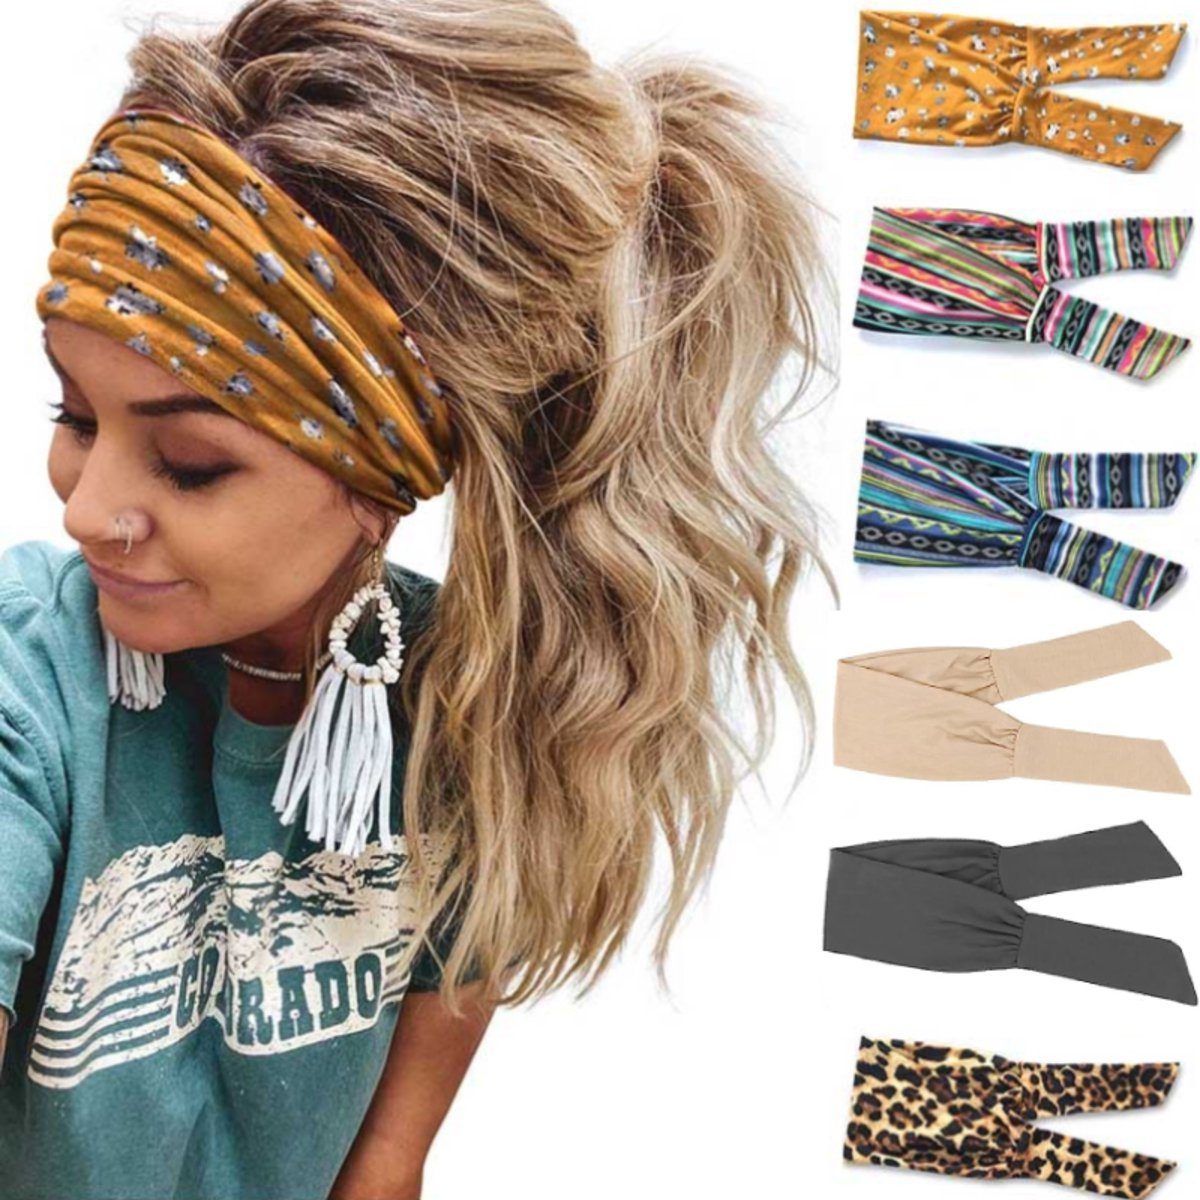 BOTC Haarband Haarspange Stirnband - Yoga Sport Haarband Mehrfarbig Haarreifen Damen, set, 6-tlg., 6 Stück Damen-Sport-Stirnbänder, Haarband Samt Wildleder- 6 Farben Mix